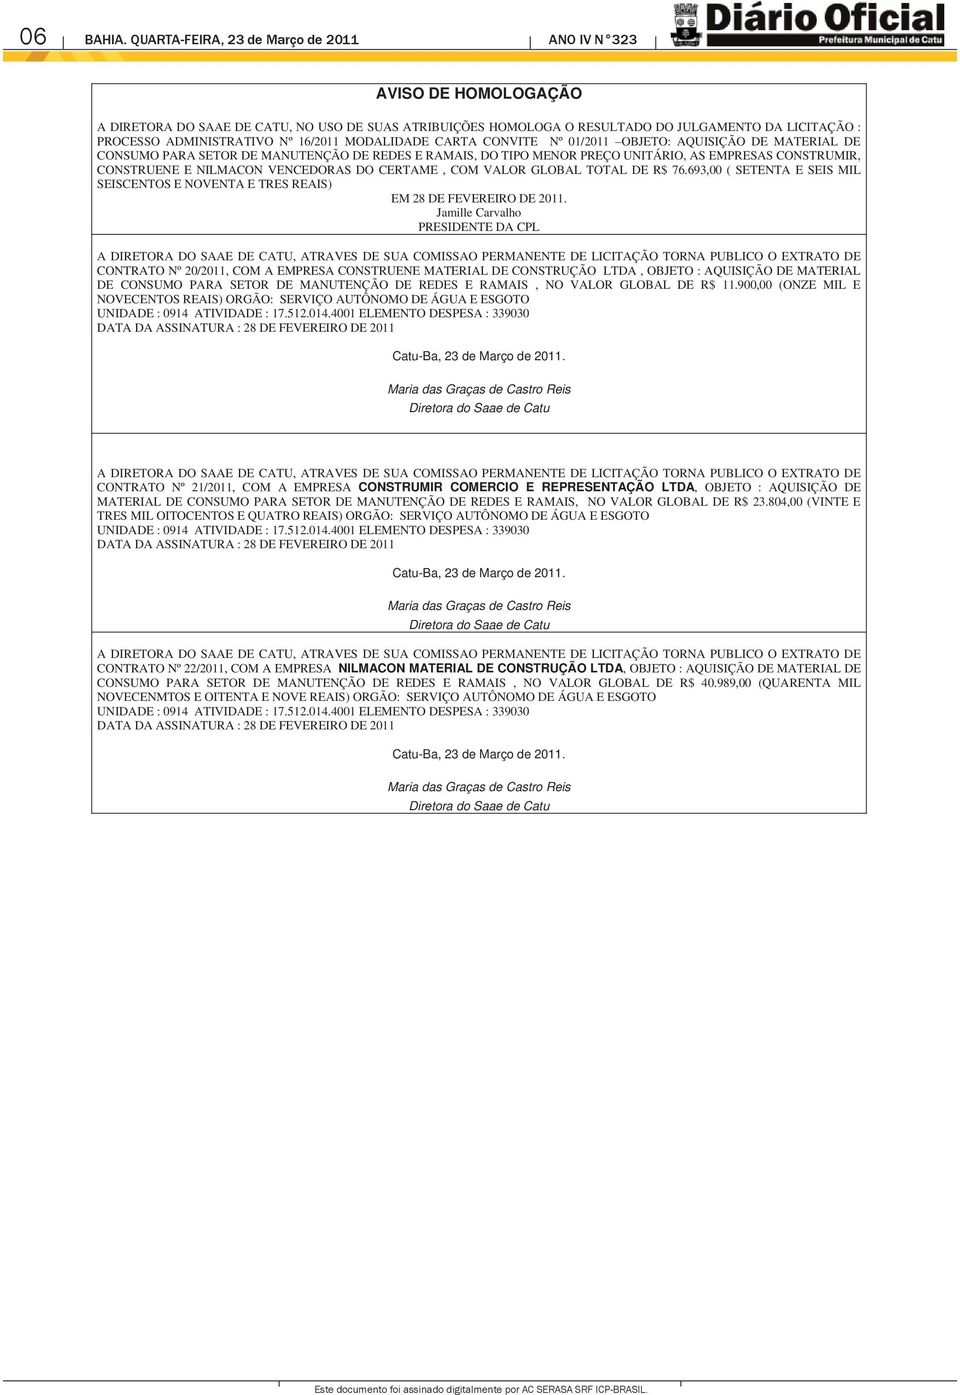 16/2011 MODALIDADE CARTA CONVITE Nº 01/2011 OBJETO: AQUISIÇÃO DE MATERIAL DE CONSUMO PARA SETOR DE MANUTENÇÃO DE REDES E RAMAIS, DO TIPO MENOR PREÇO UNITÁRIO, AS EMPRESAS CONSTRUMIR, CONSTRUENE E